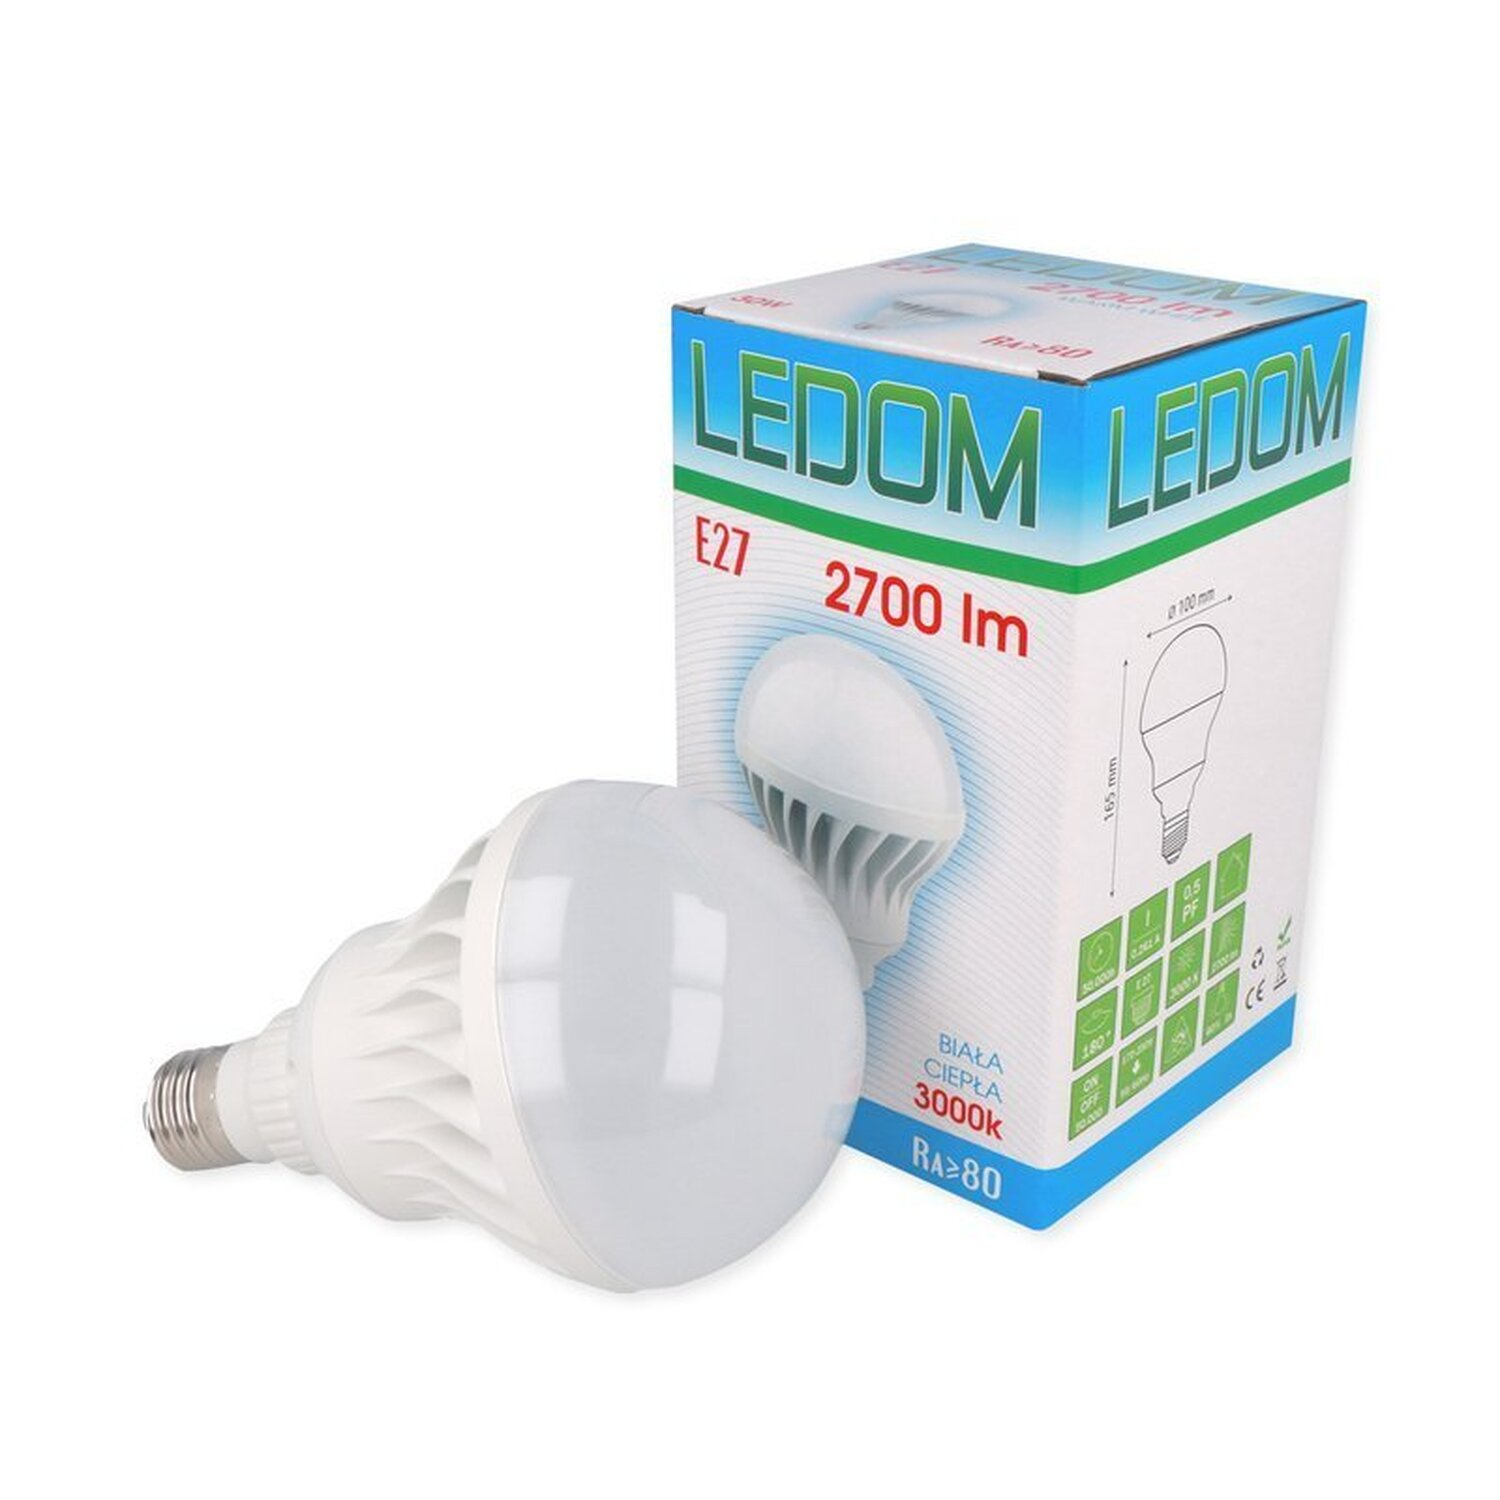 LINE 2700 LED lm Ceramic E27 30W Warmweiß Leuchtmittel LED LED